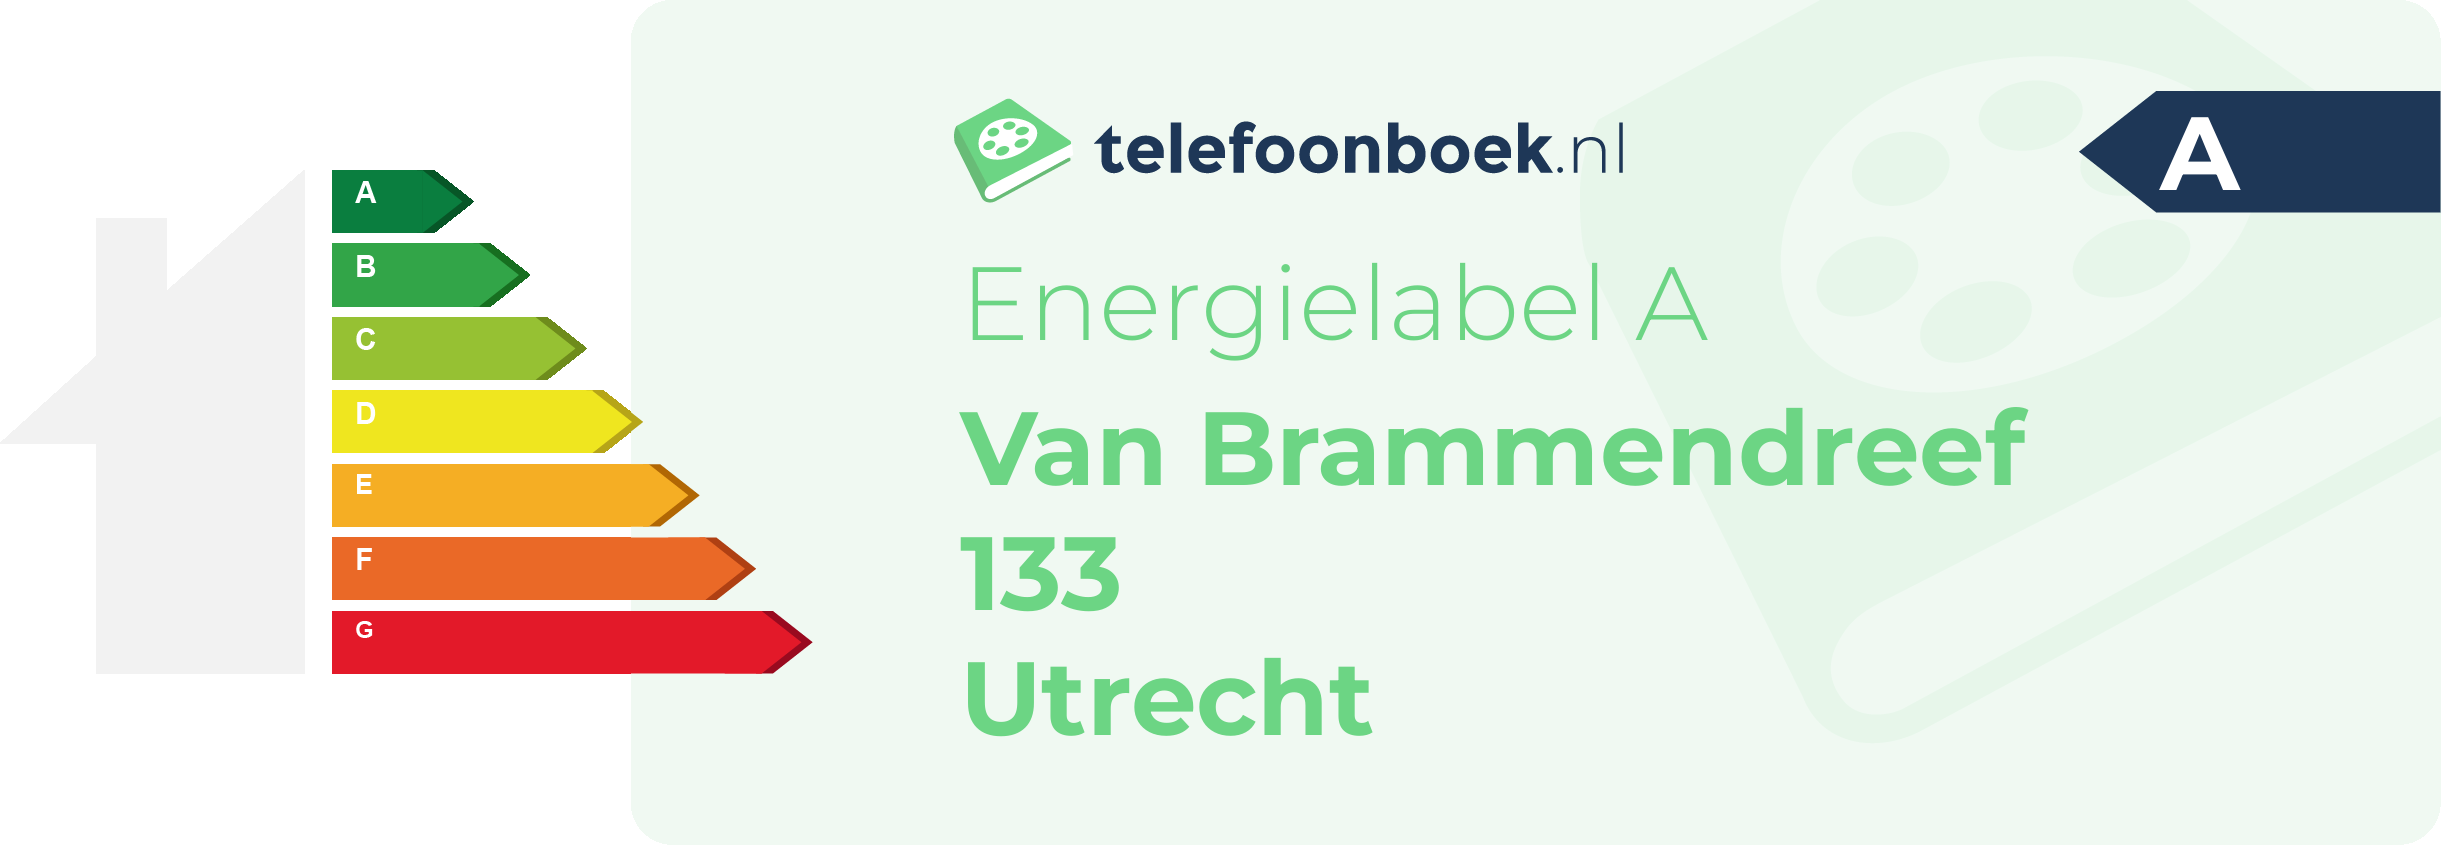 Energielabel Van Brammendreef 133 Utrecht